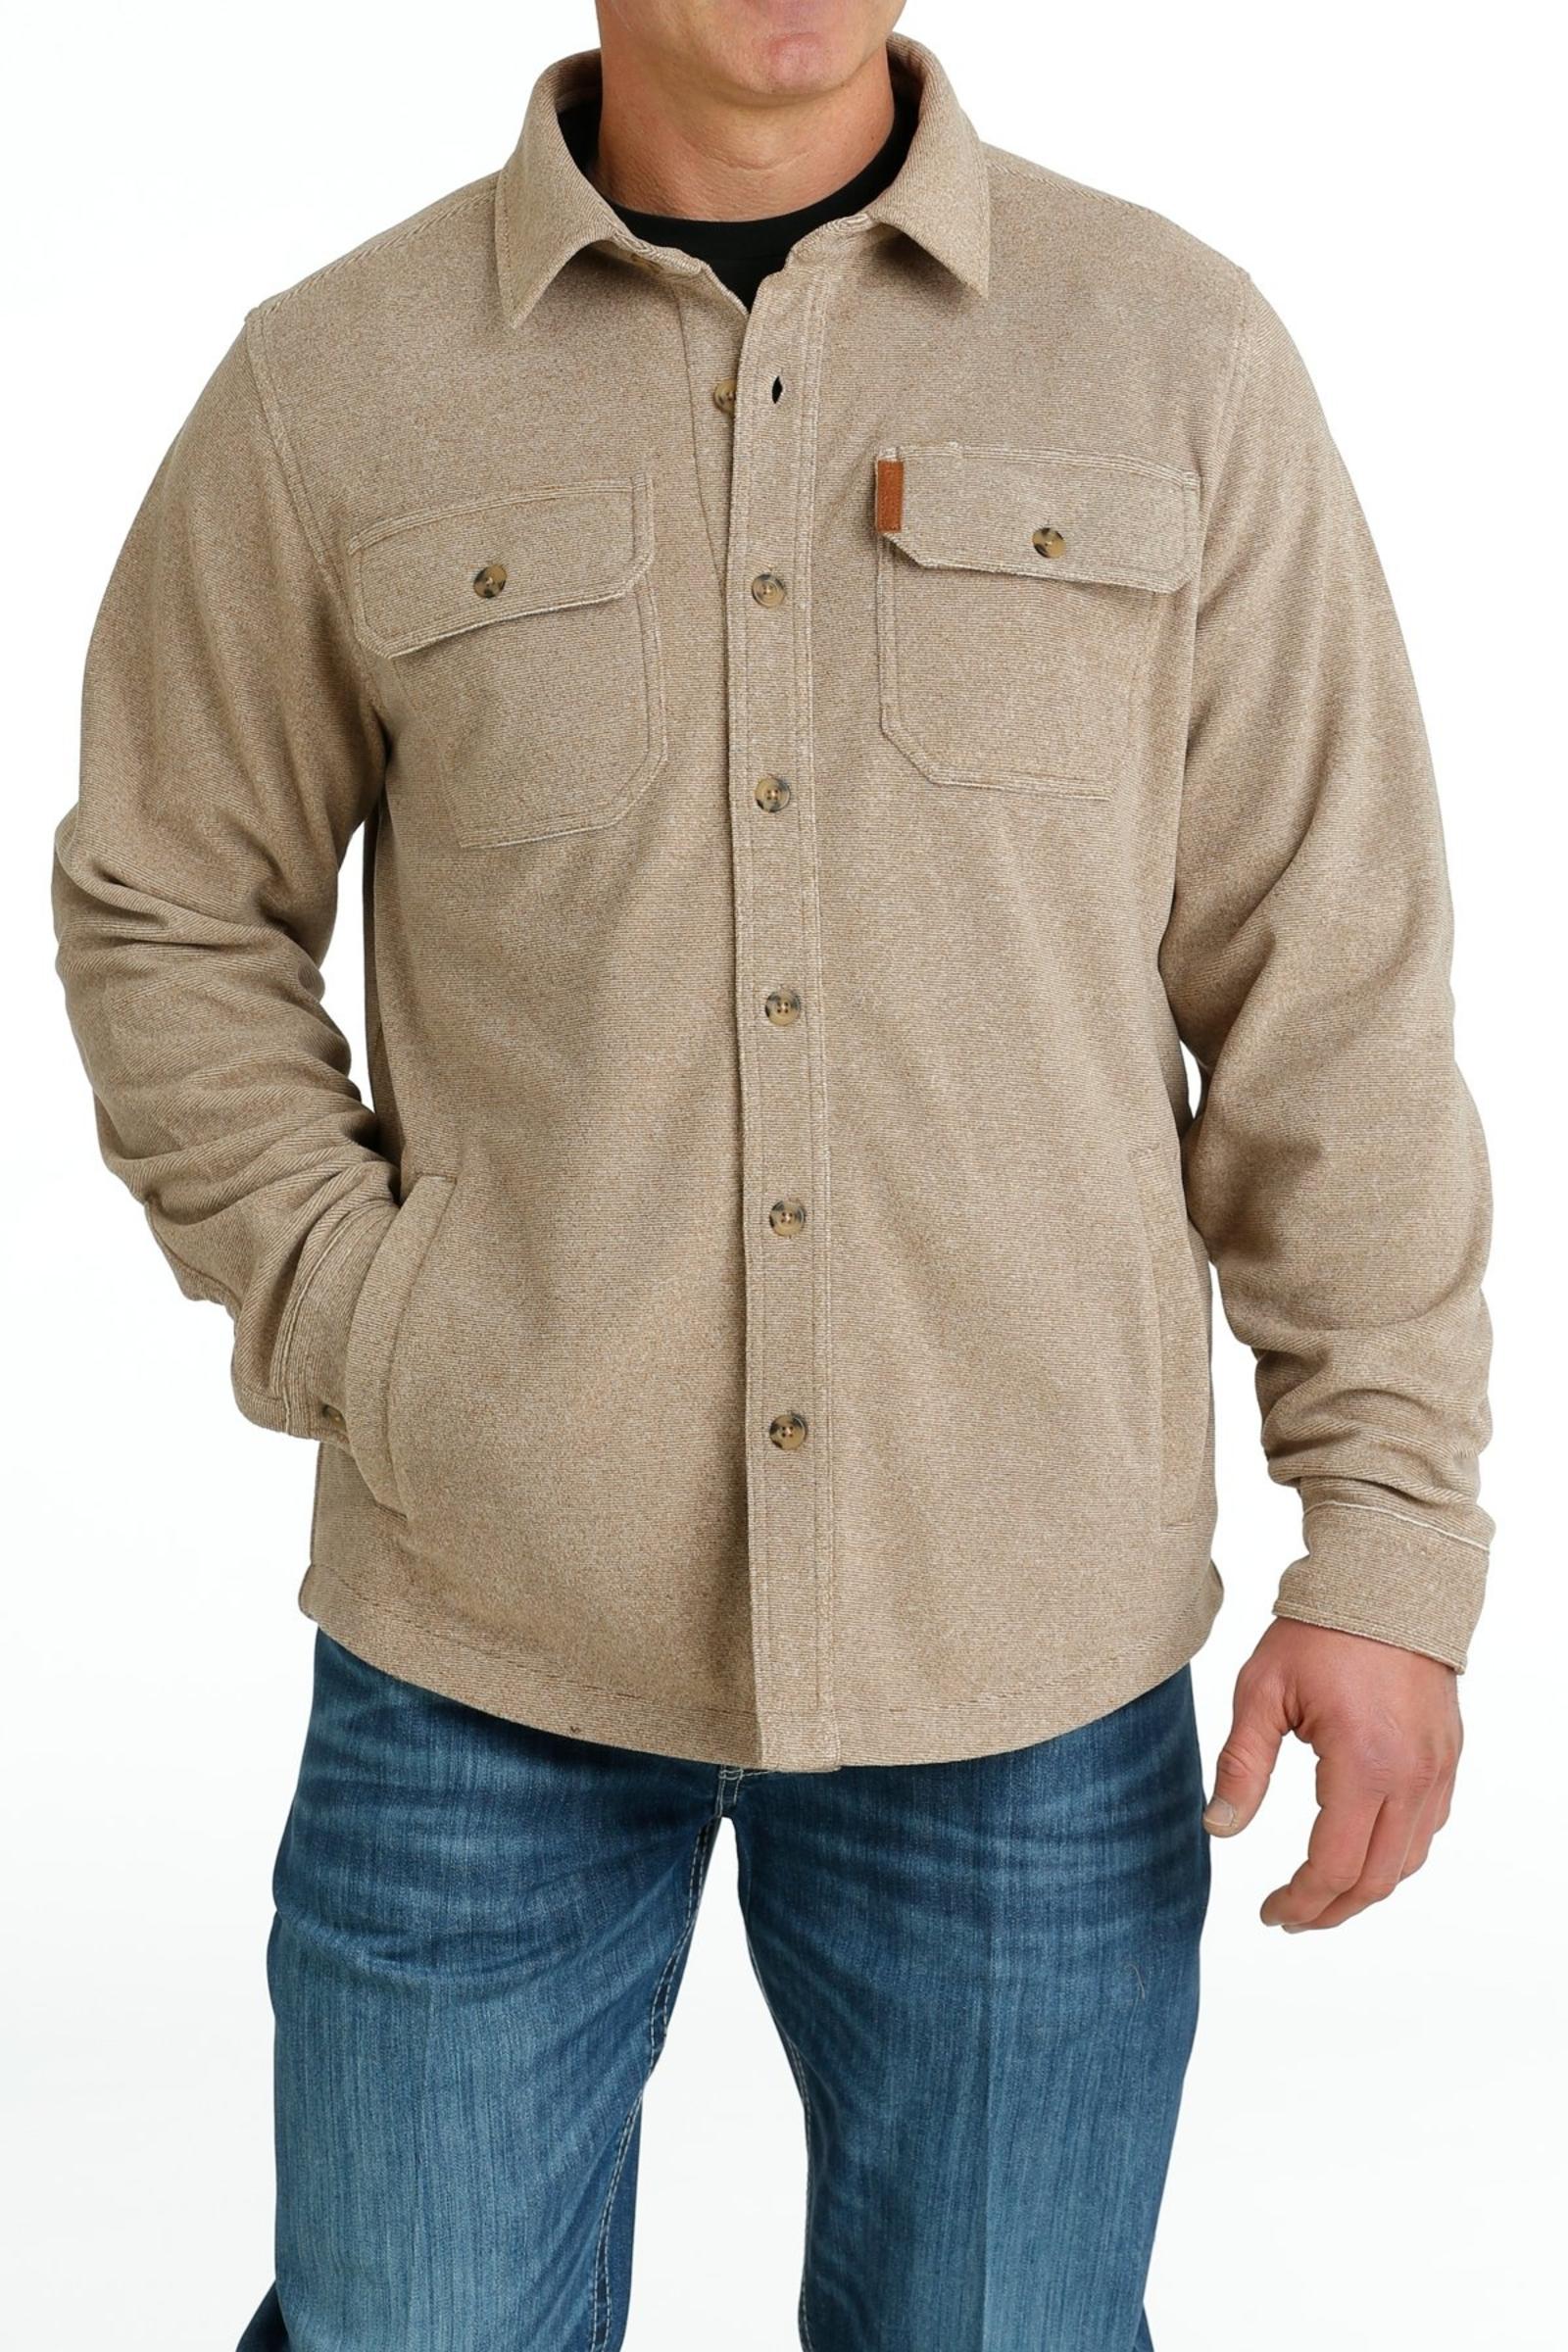 Cinch Jeans Men's Polar Fleece Shirt Jacket - Khaki